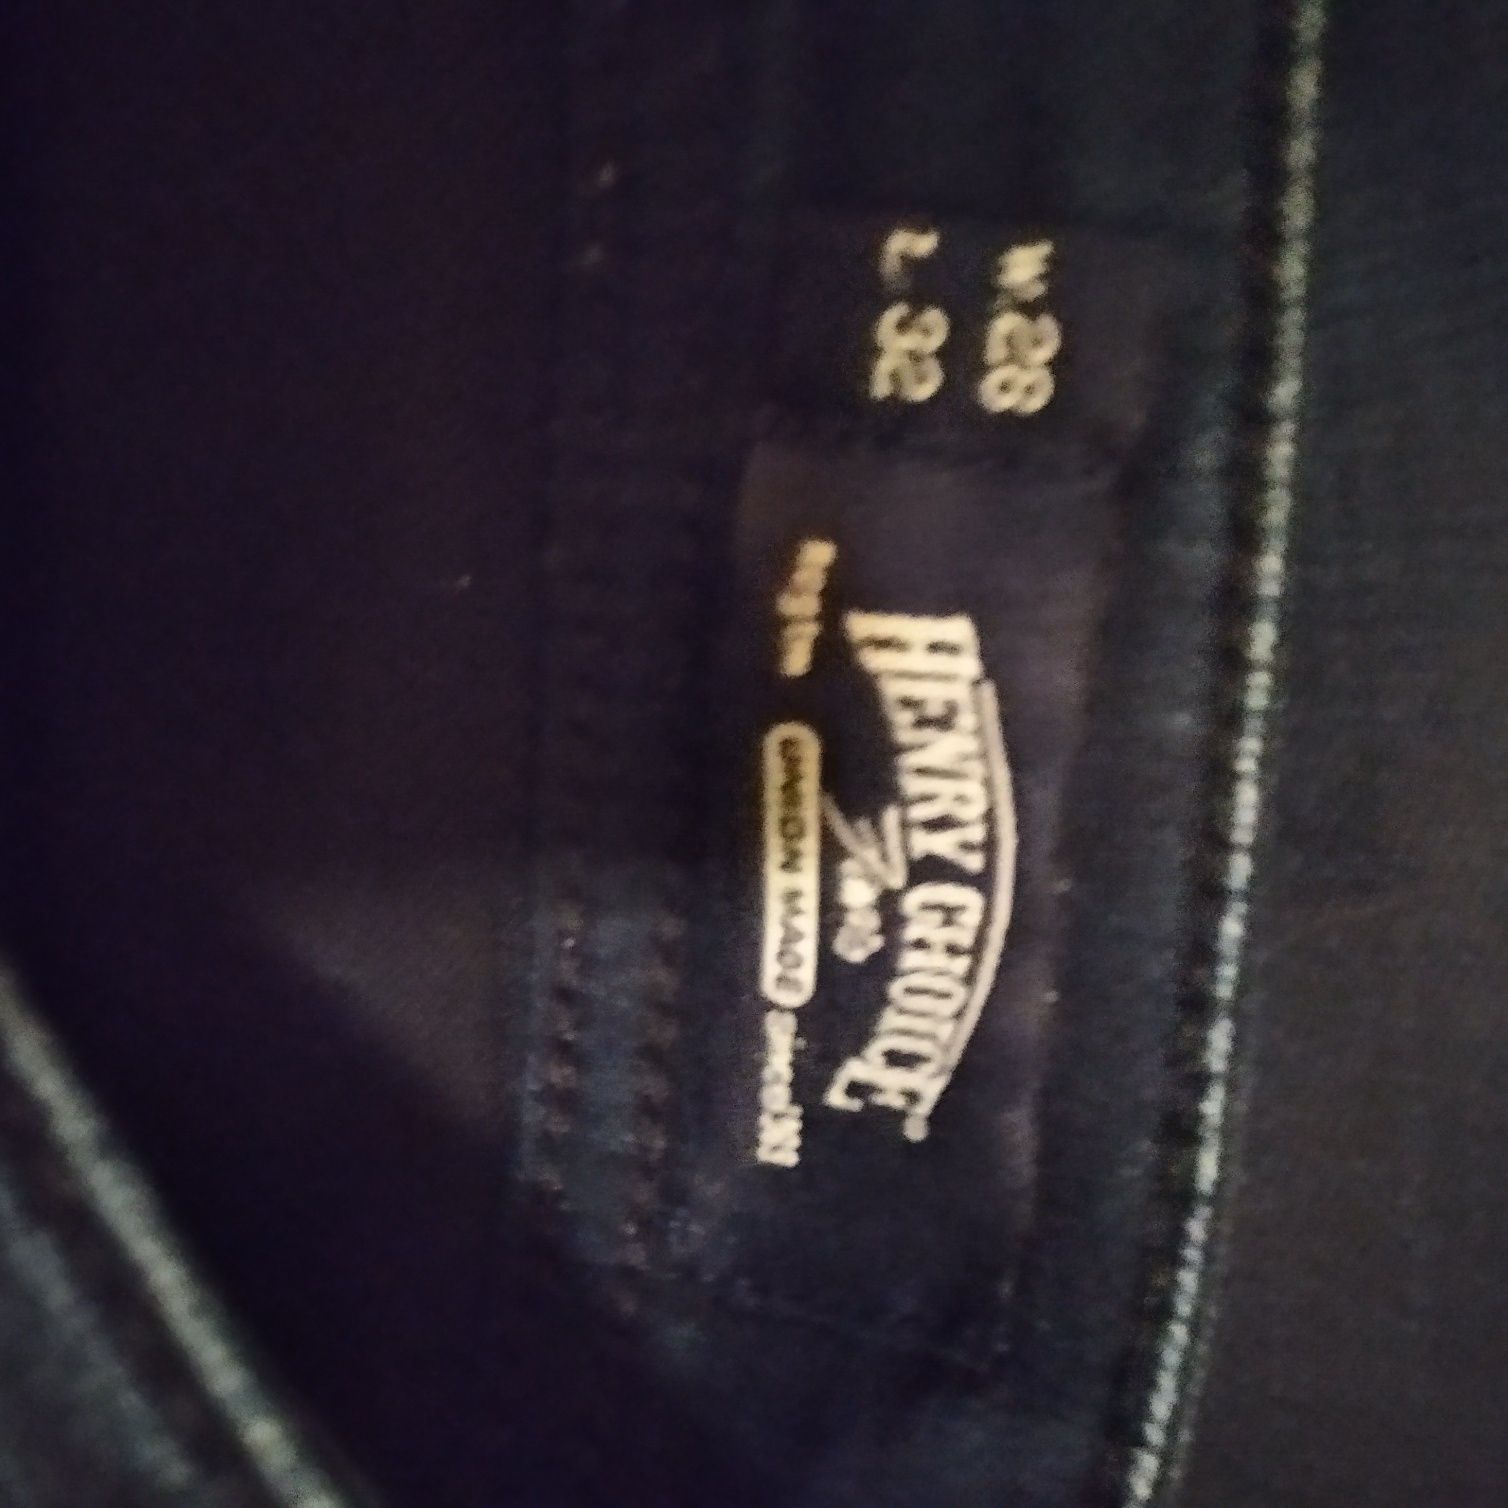 Spodnie męskie jeansy rozmiar W28 L32 Henry Choice